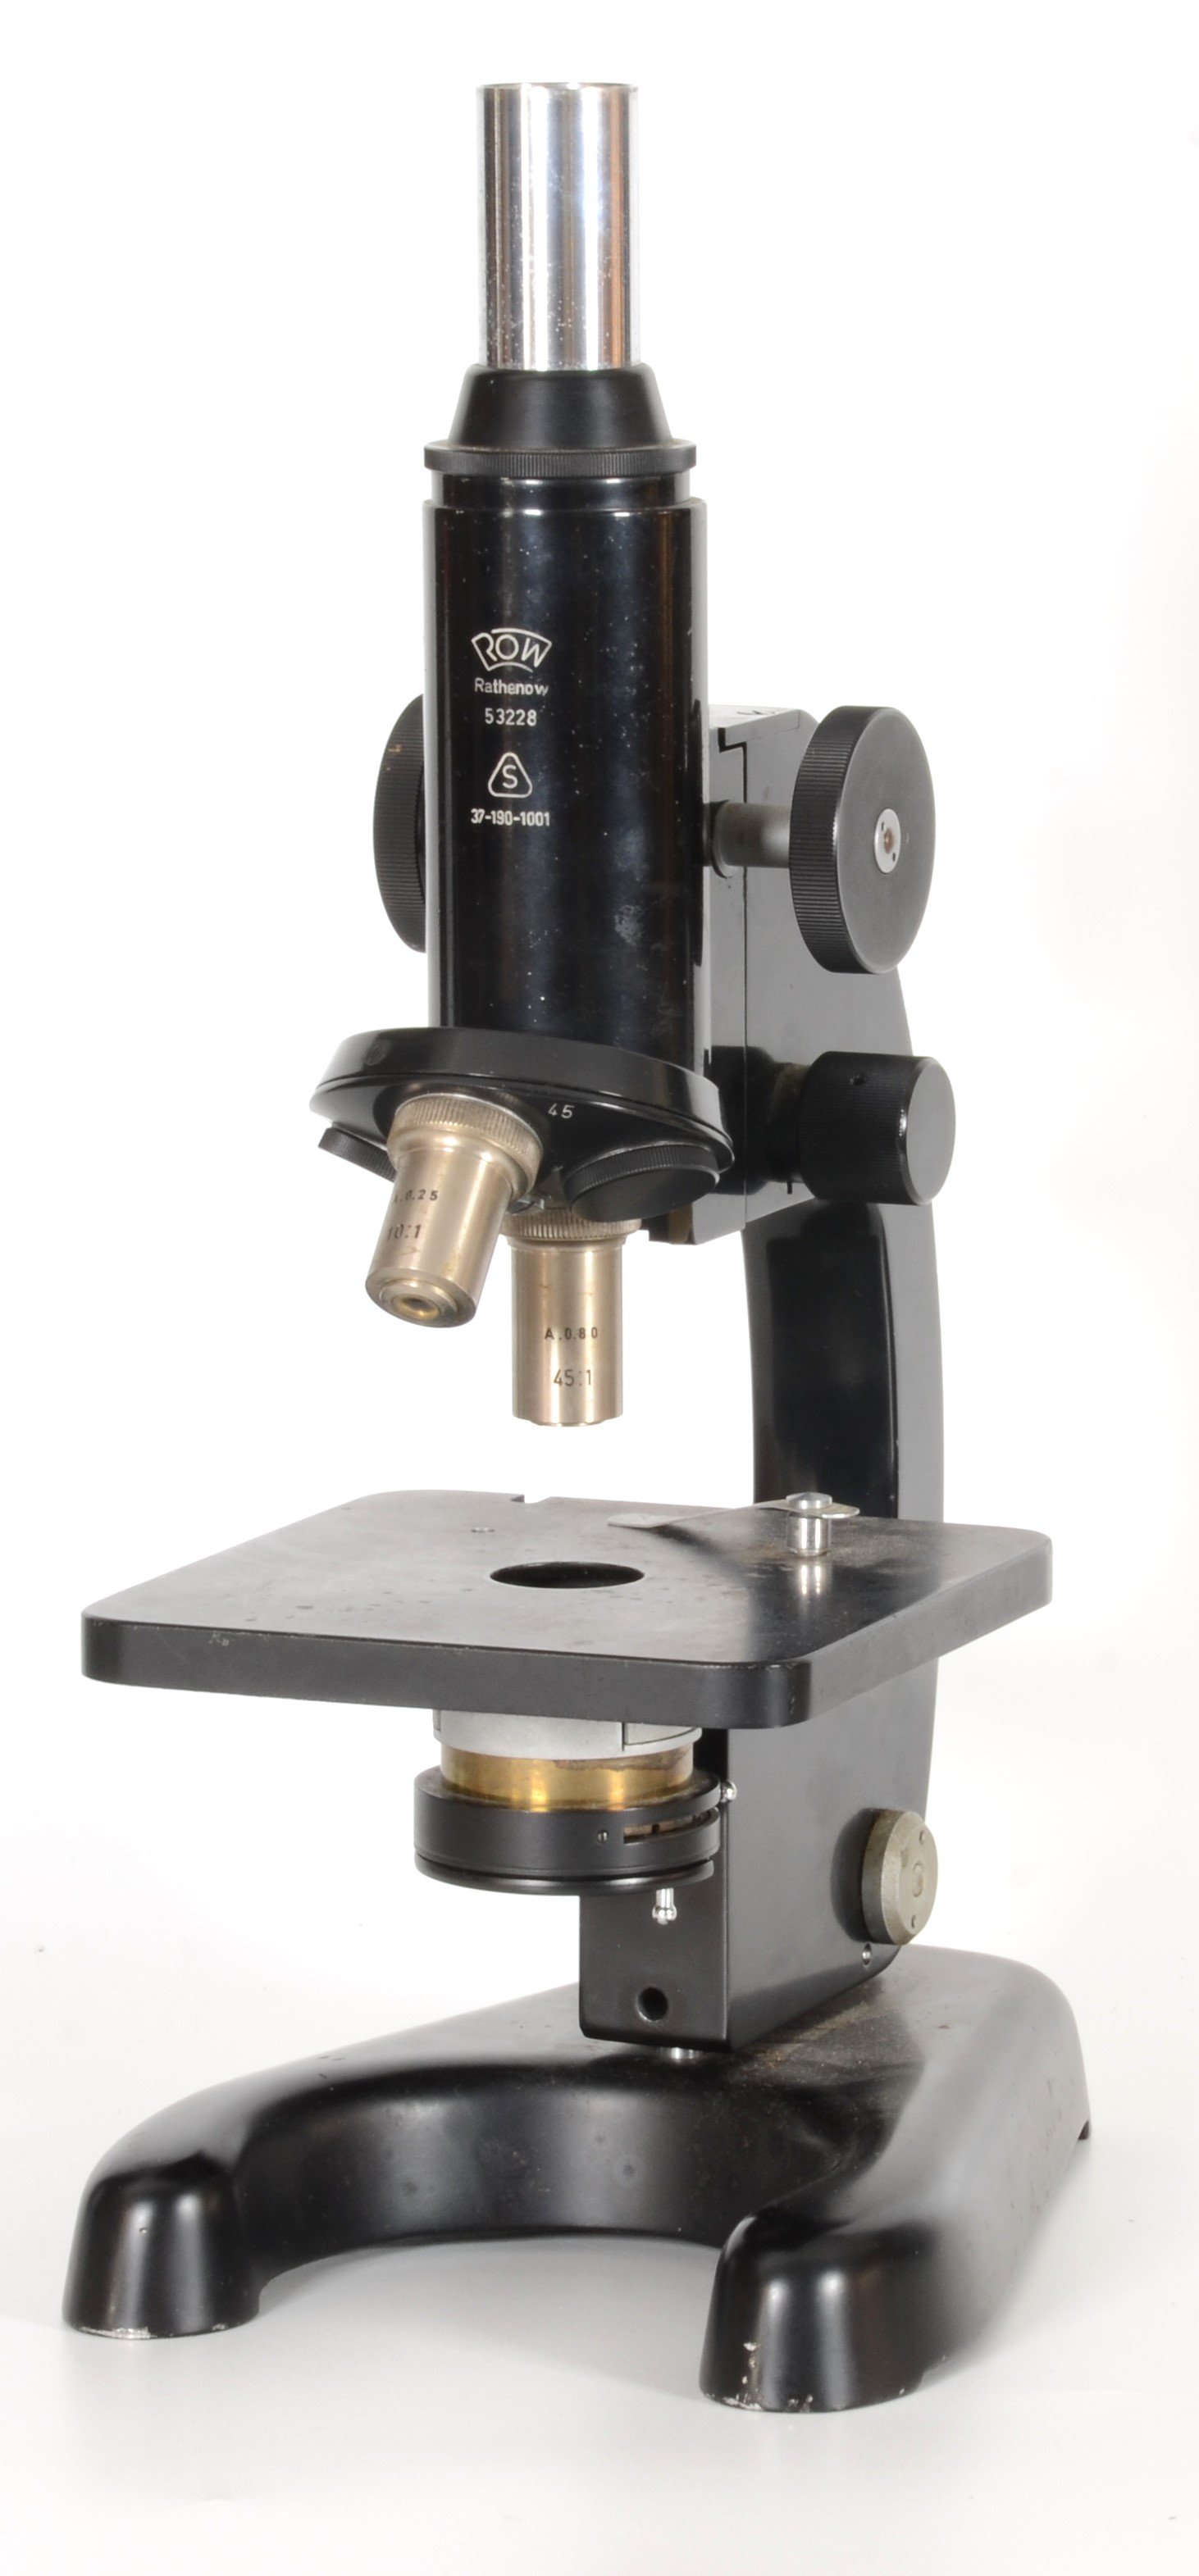 Mikroskop des VEB Rathenower Optische Werke (DDR Geschichtsmuseum im Dokumentationszentrum Perleberg CC BY-SA)